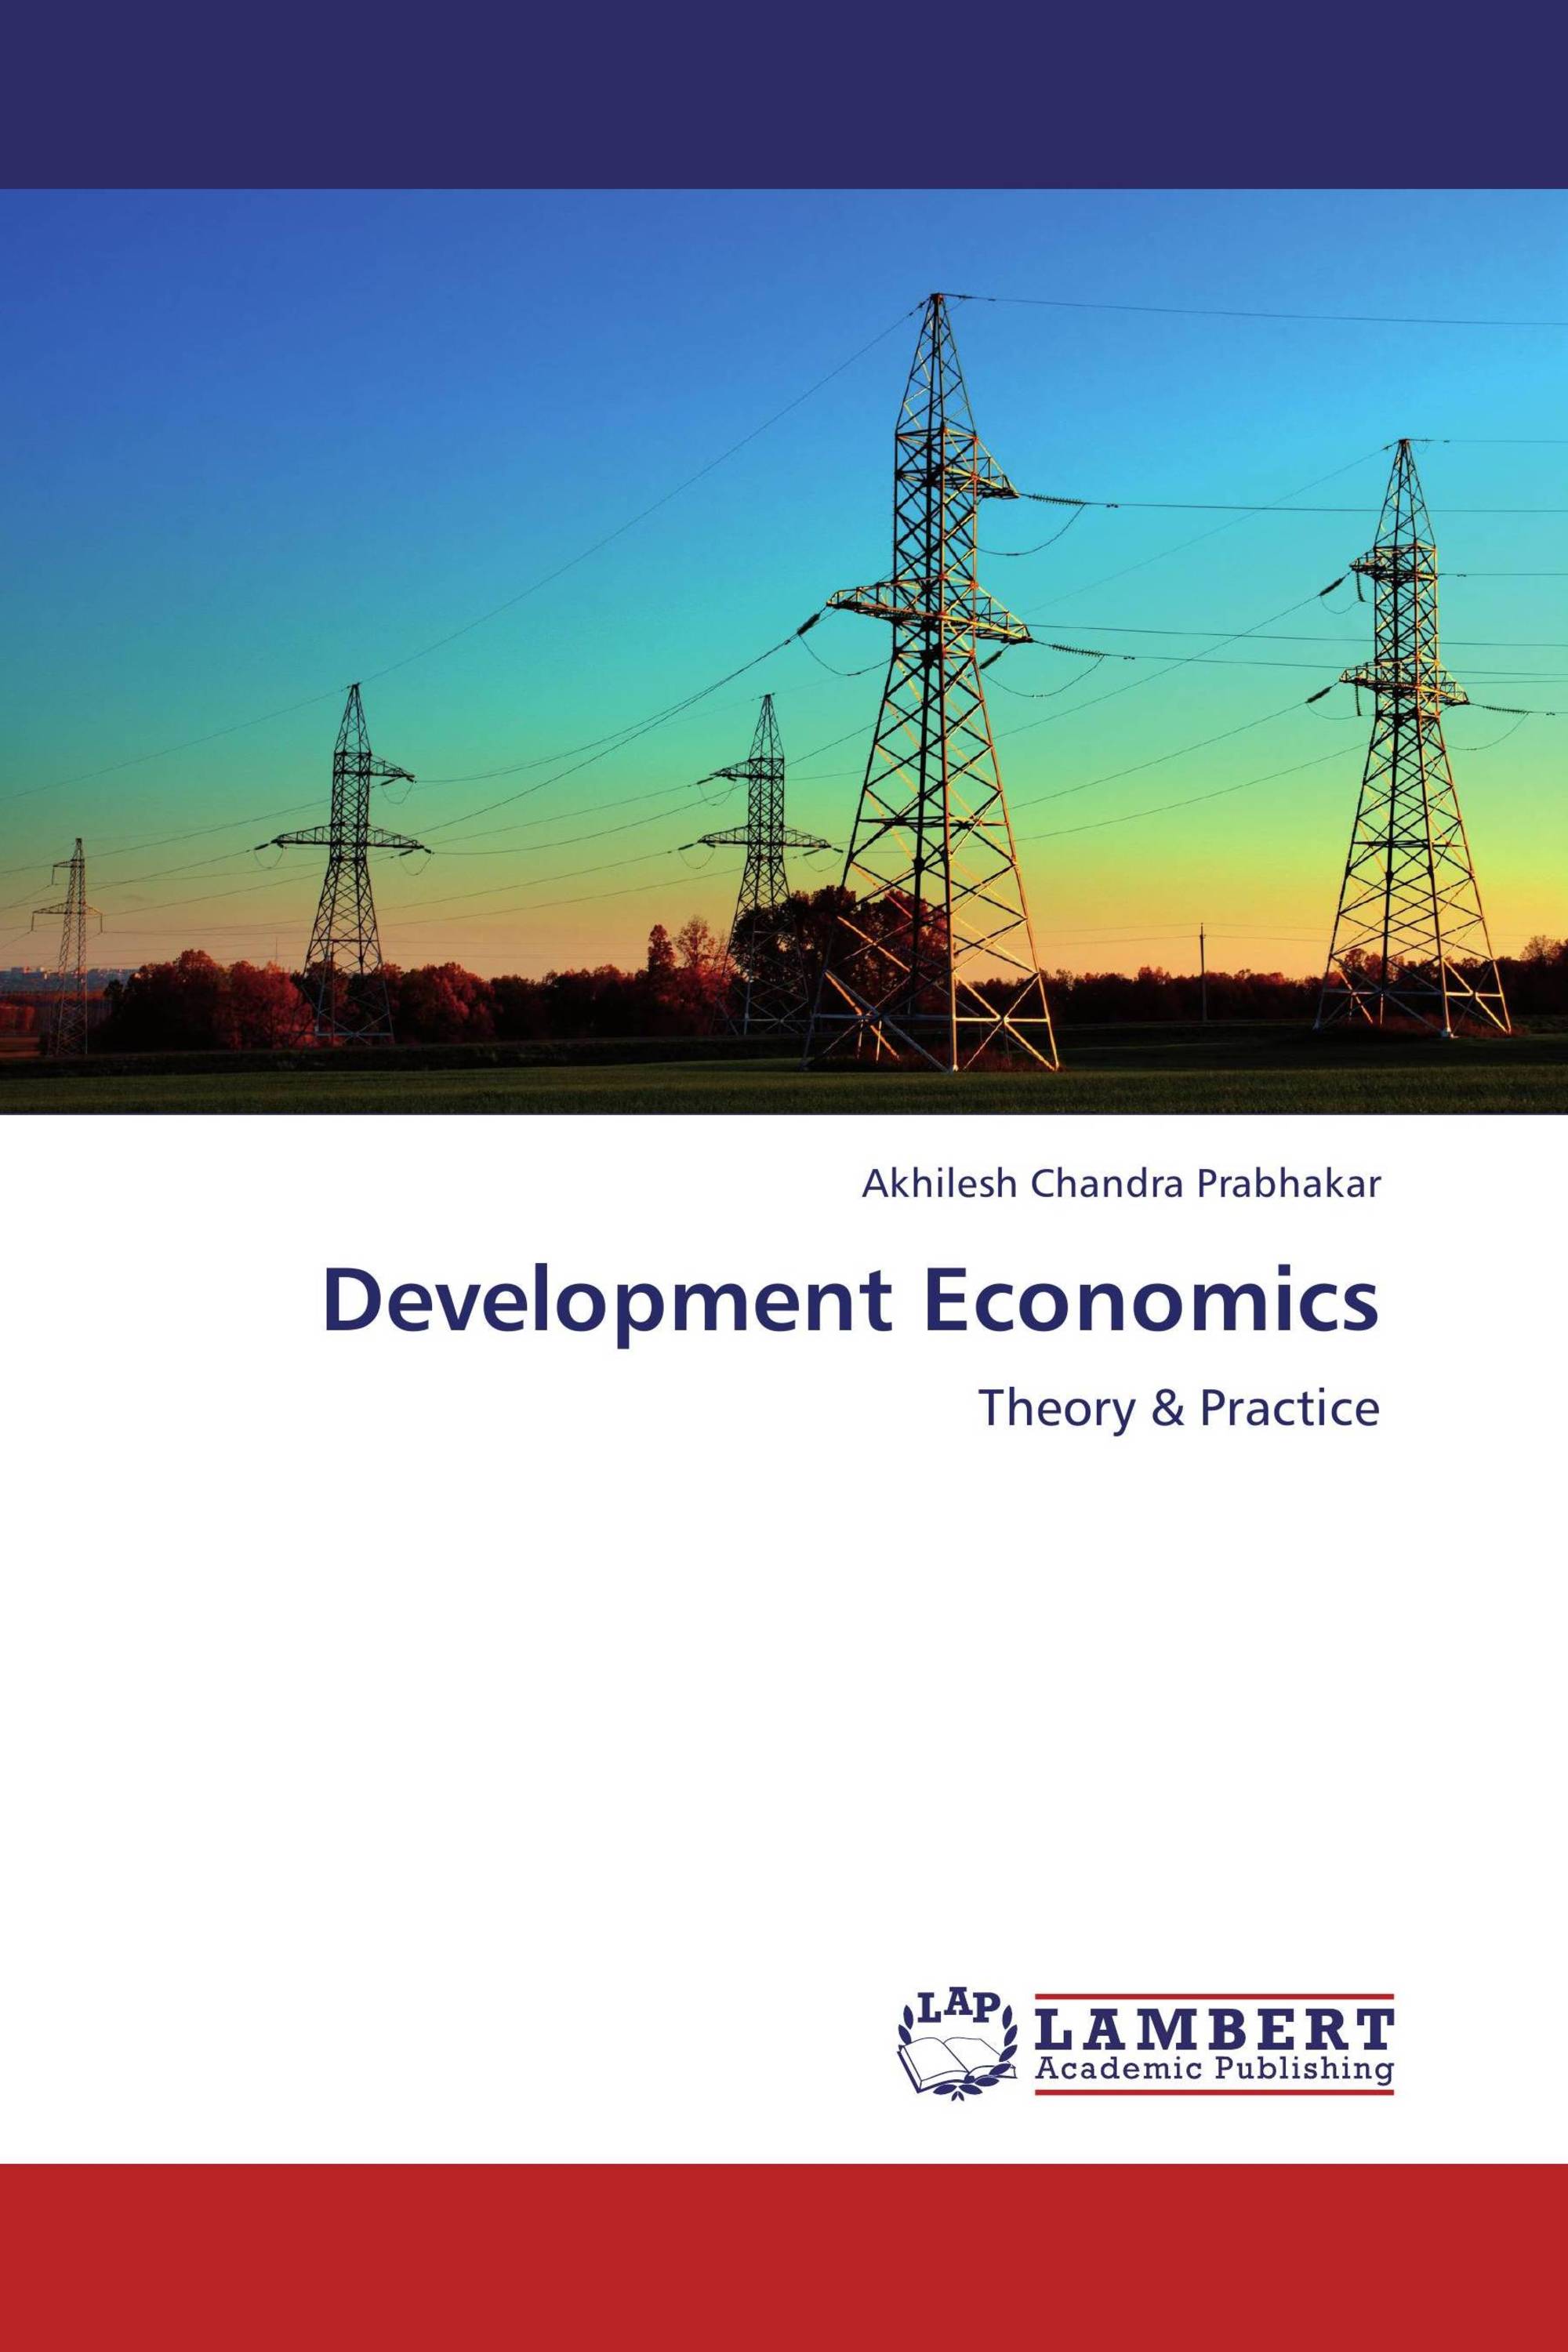 thesis development economics